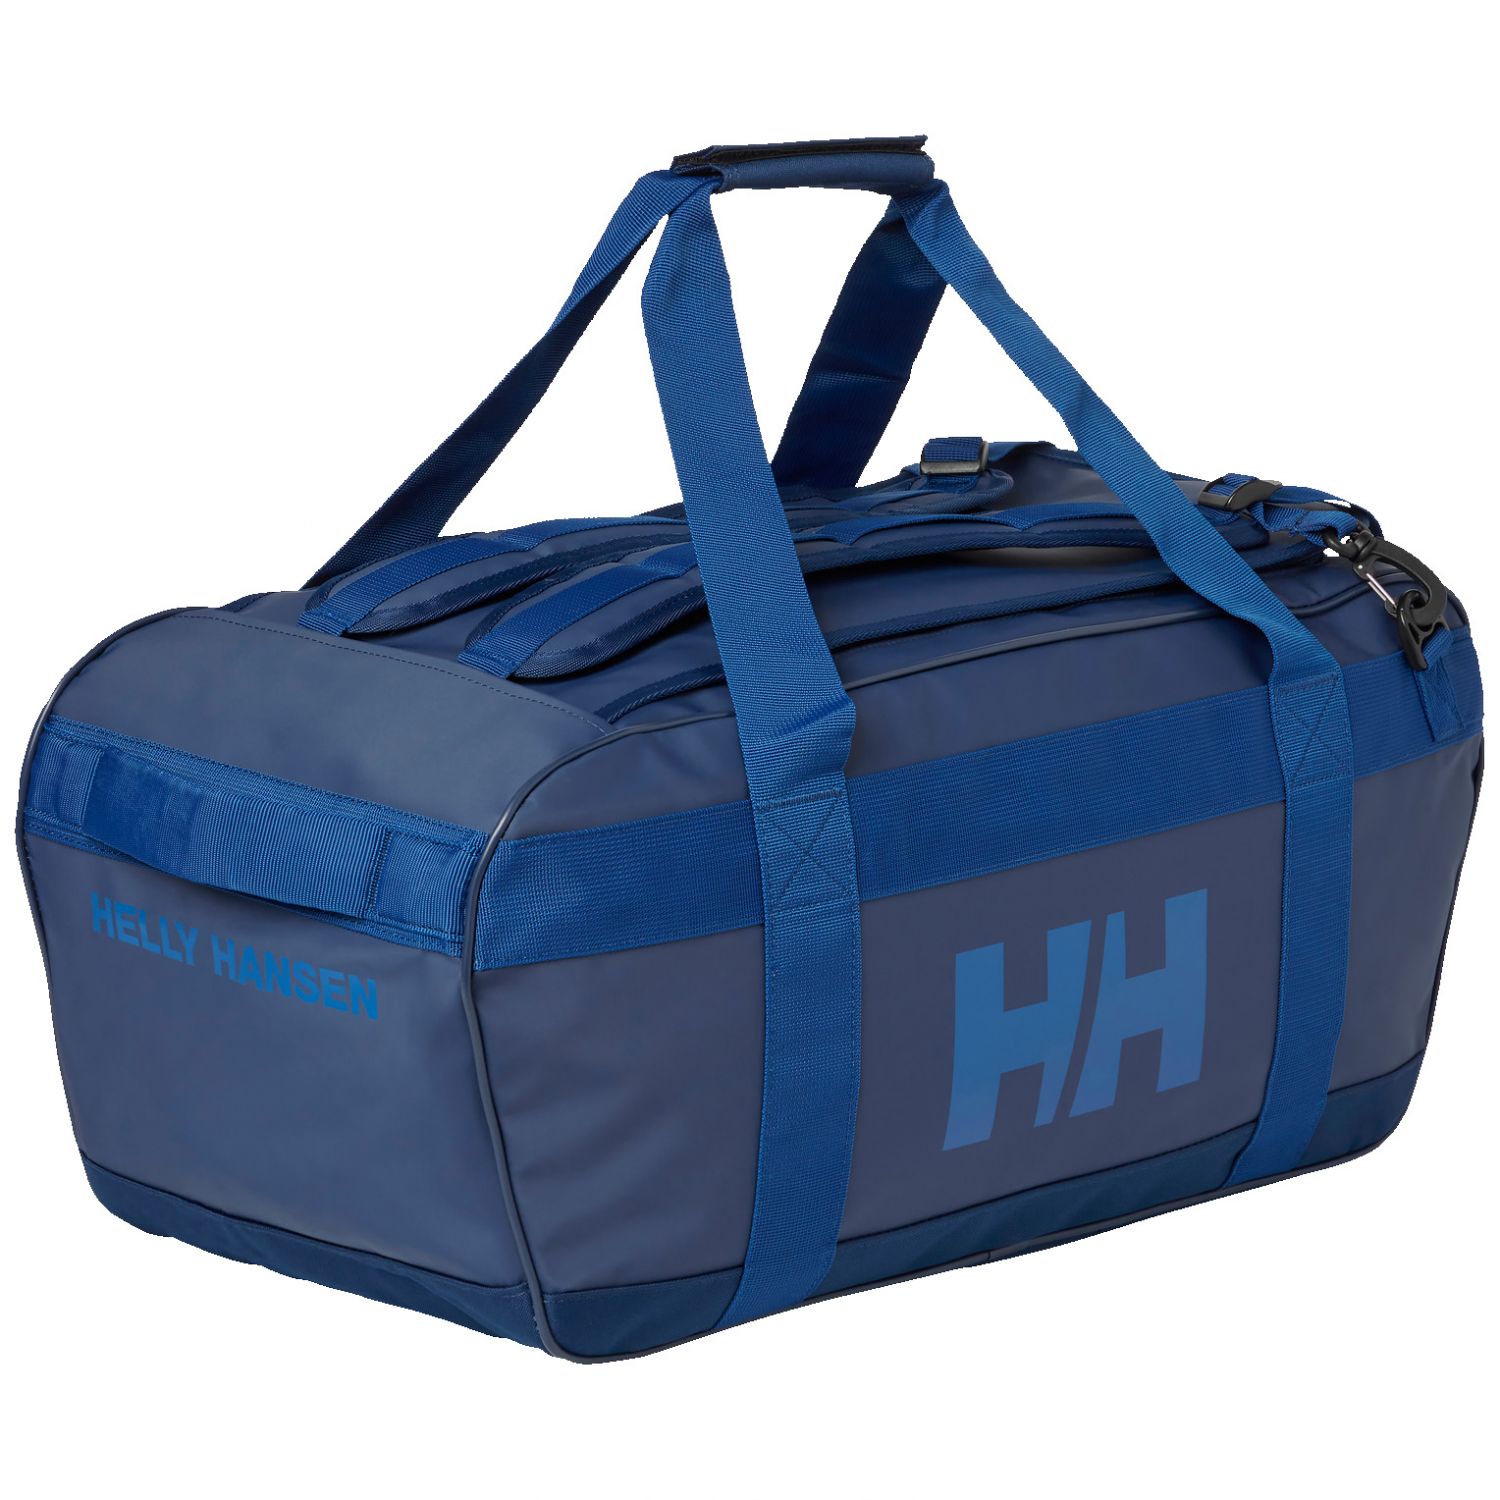 Brug Helly Hansen Scout Duffel Bag, 70L, ocean til en forbedret oplevelse